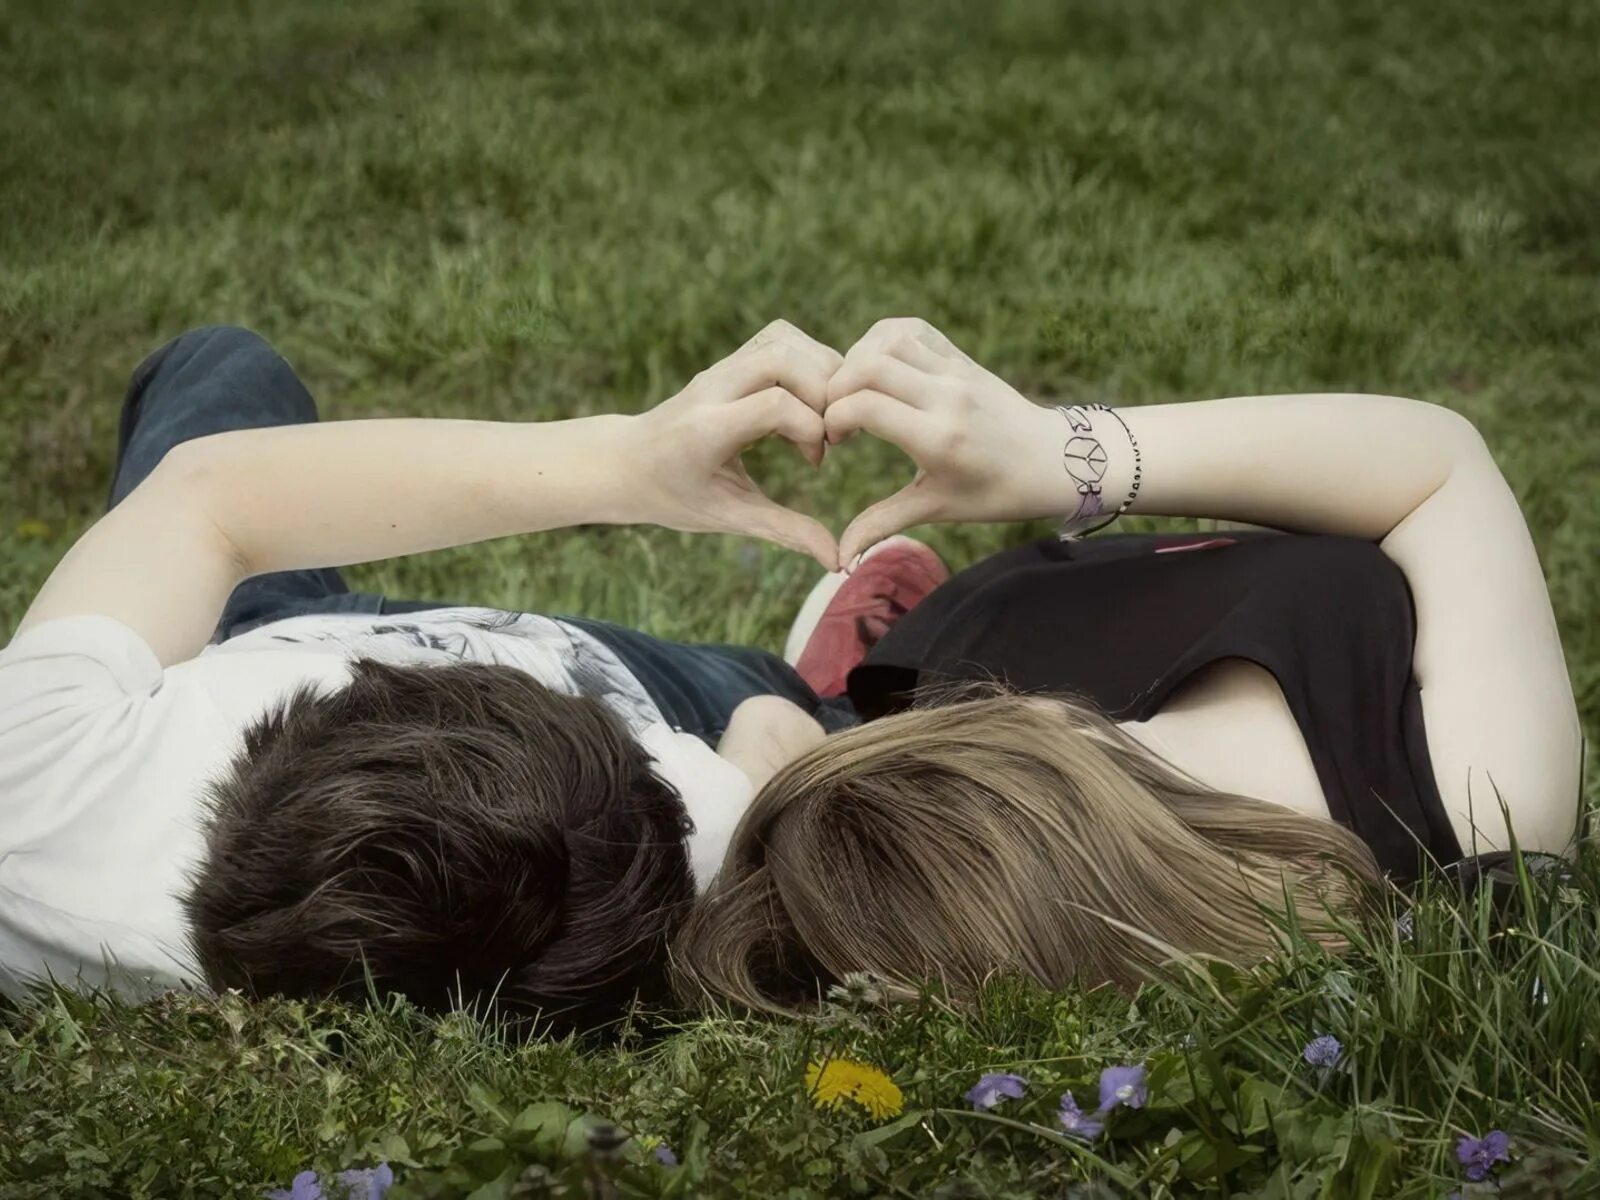 Развлечь любимую. Пара влюбленных. Влюбленные лежат на траве. Подростковая влюбленность. Картинки влюбленных.